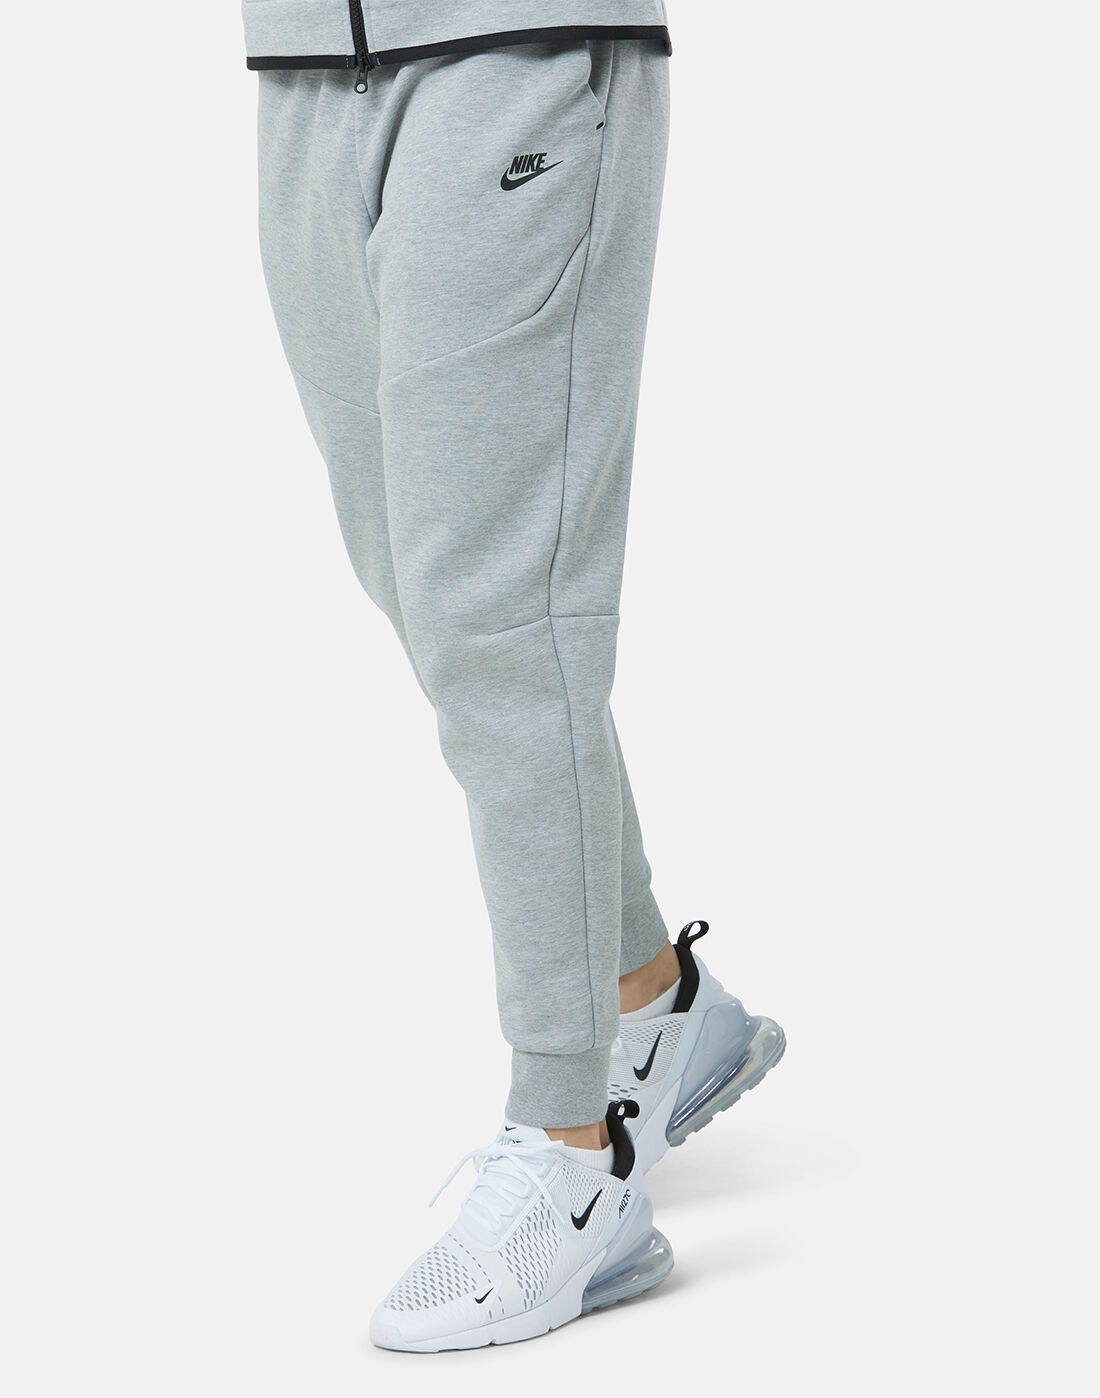 nike tech fleece track pants grey